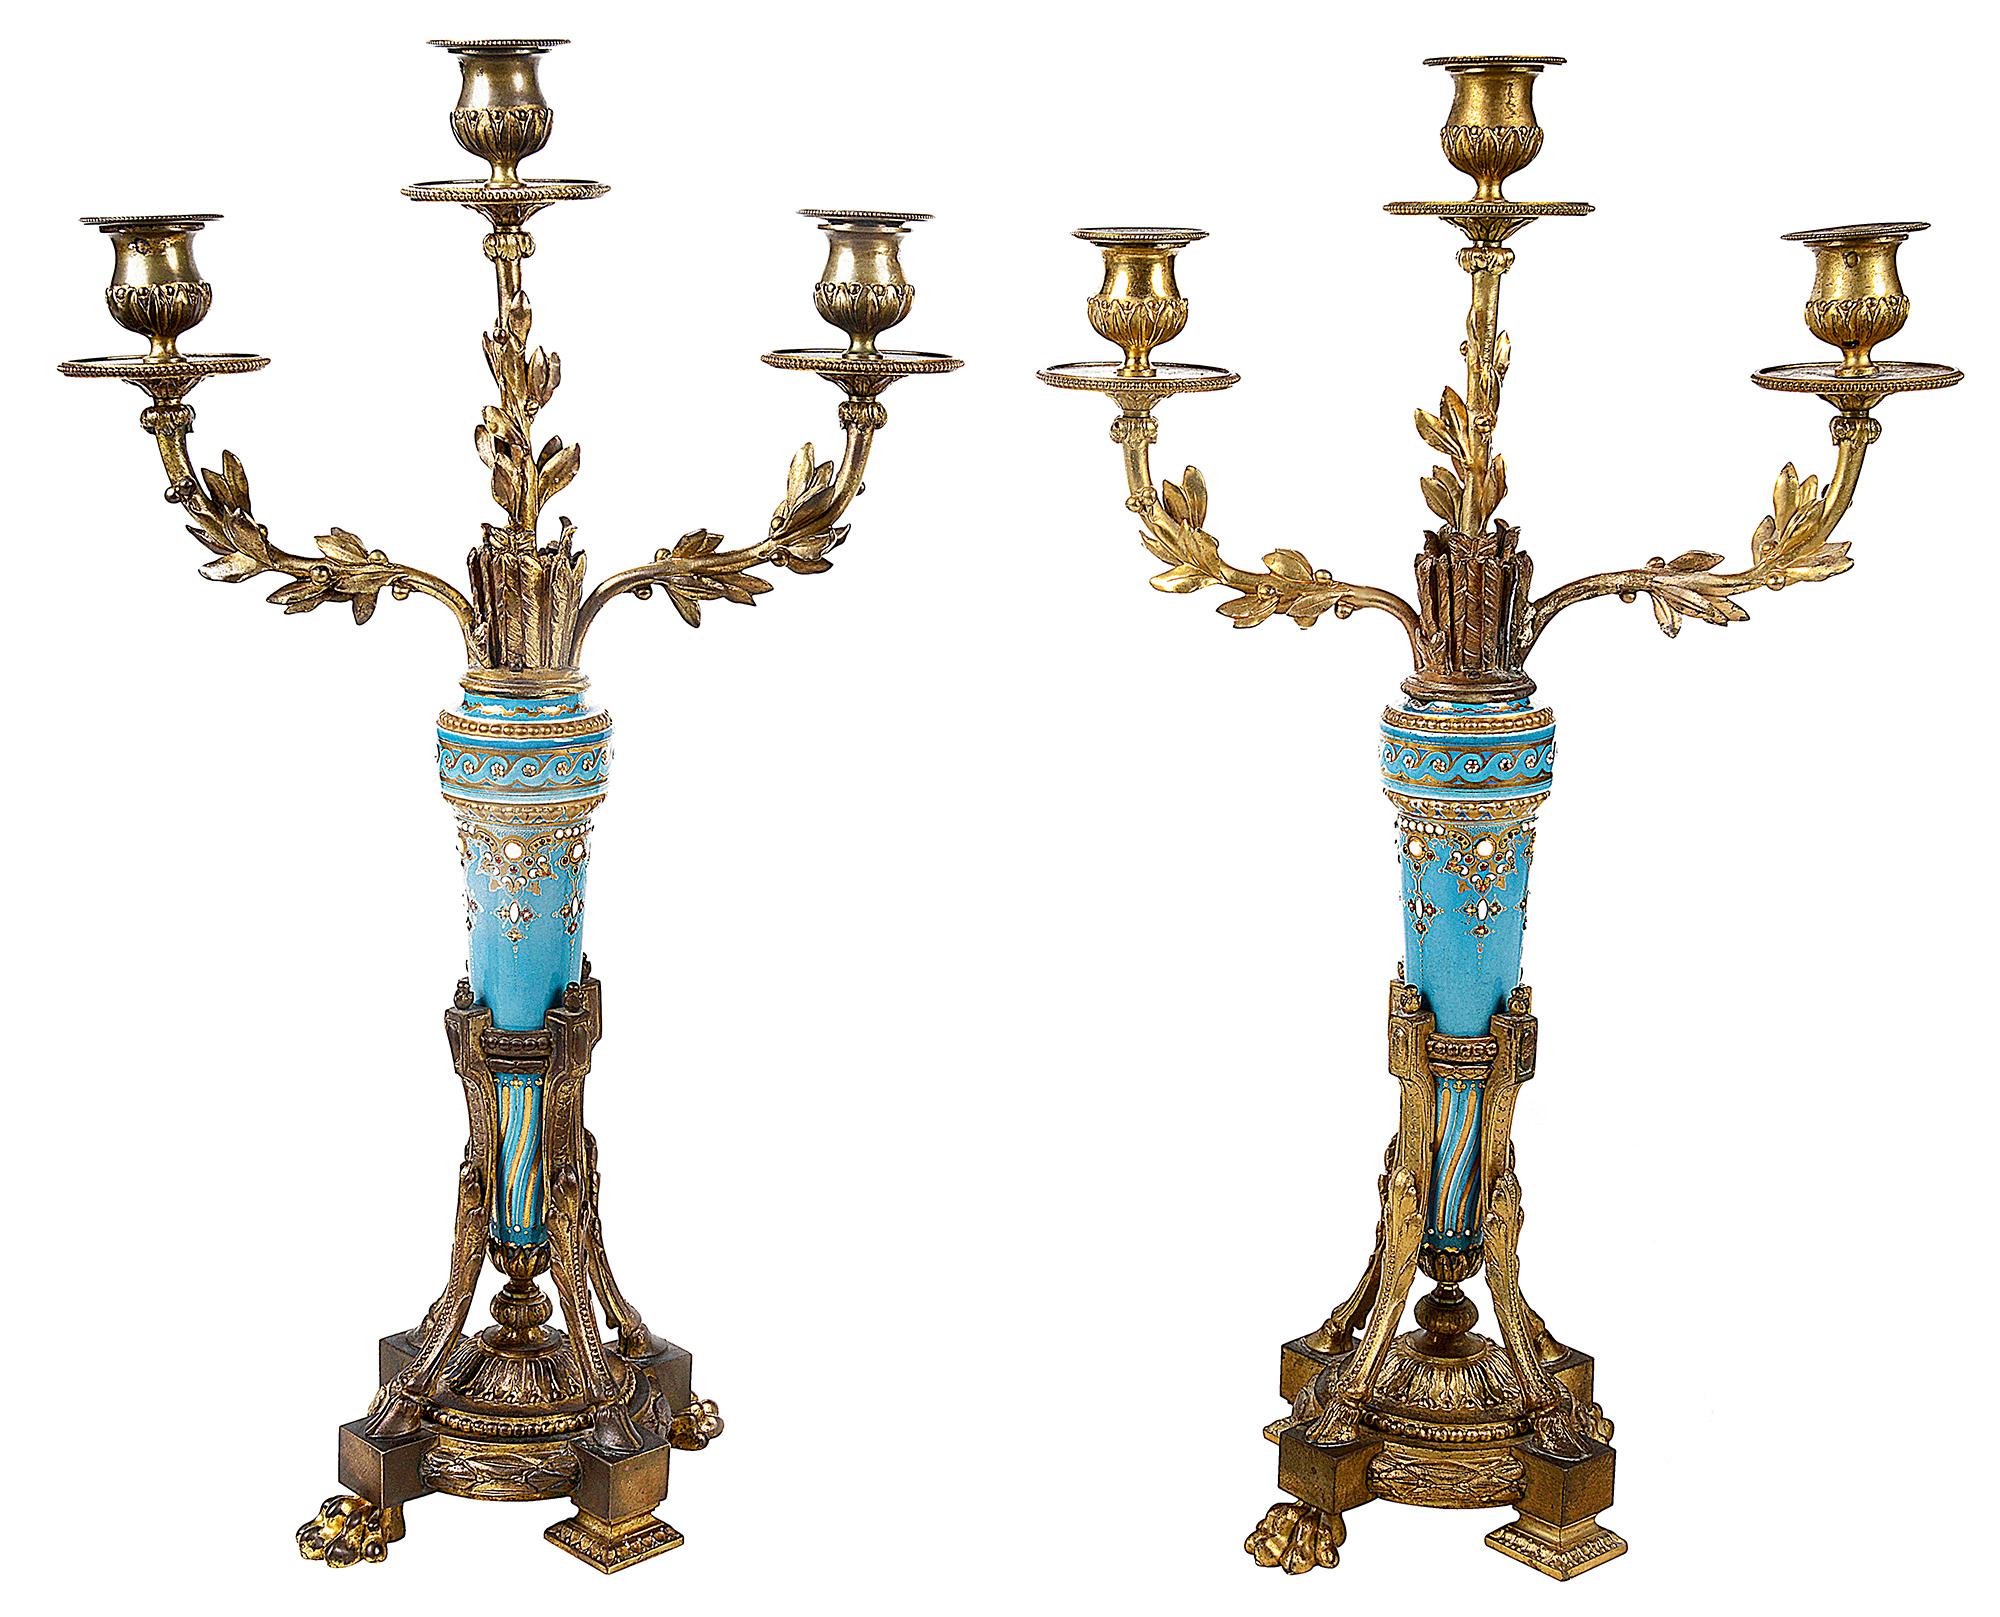 Paar Kandelaber im Louis-XVI-Stil, jeweils mit kräftigen türkisfarbenen Pfeilhüllen mit Juwelen und vergoldetem Dekor, drei Zweigleuchter mit blattförmigen Details. Auf dreiförmigen Sockeln mit Huf- und Klauenfüßen stehend.
 